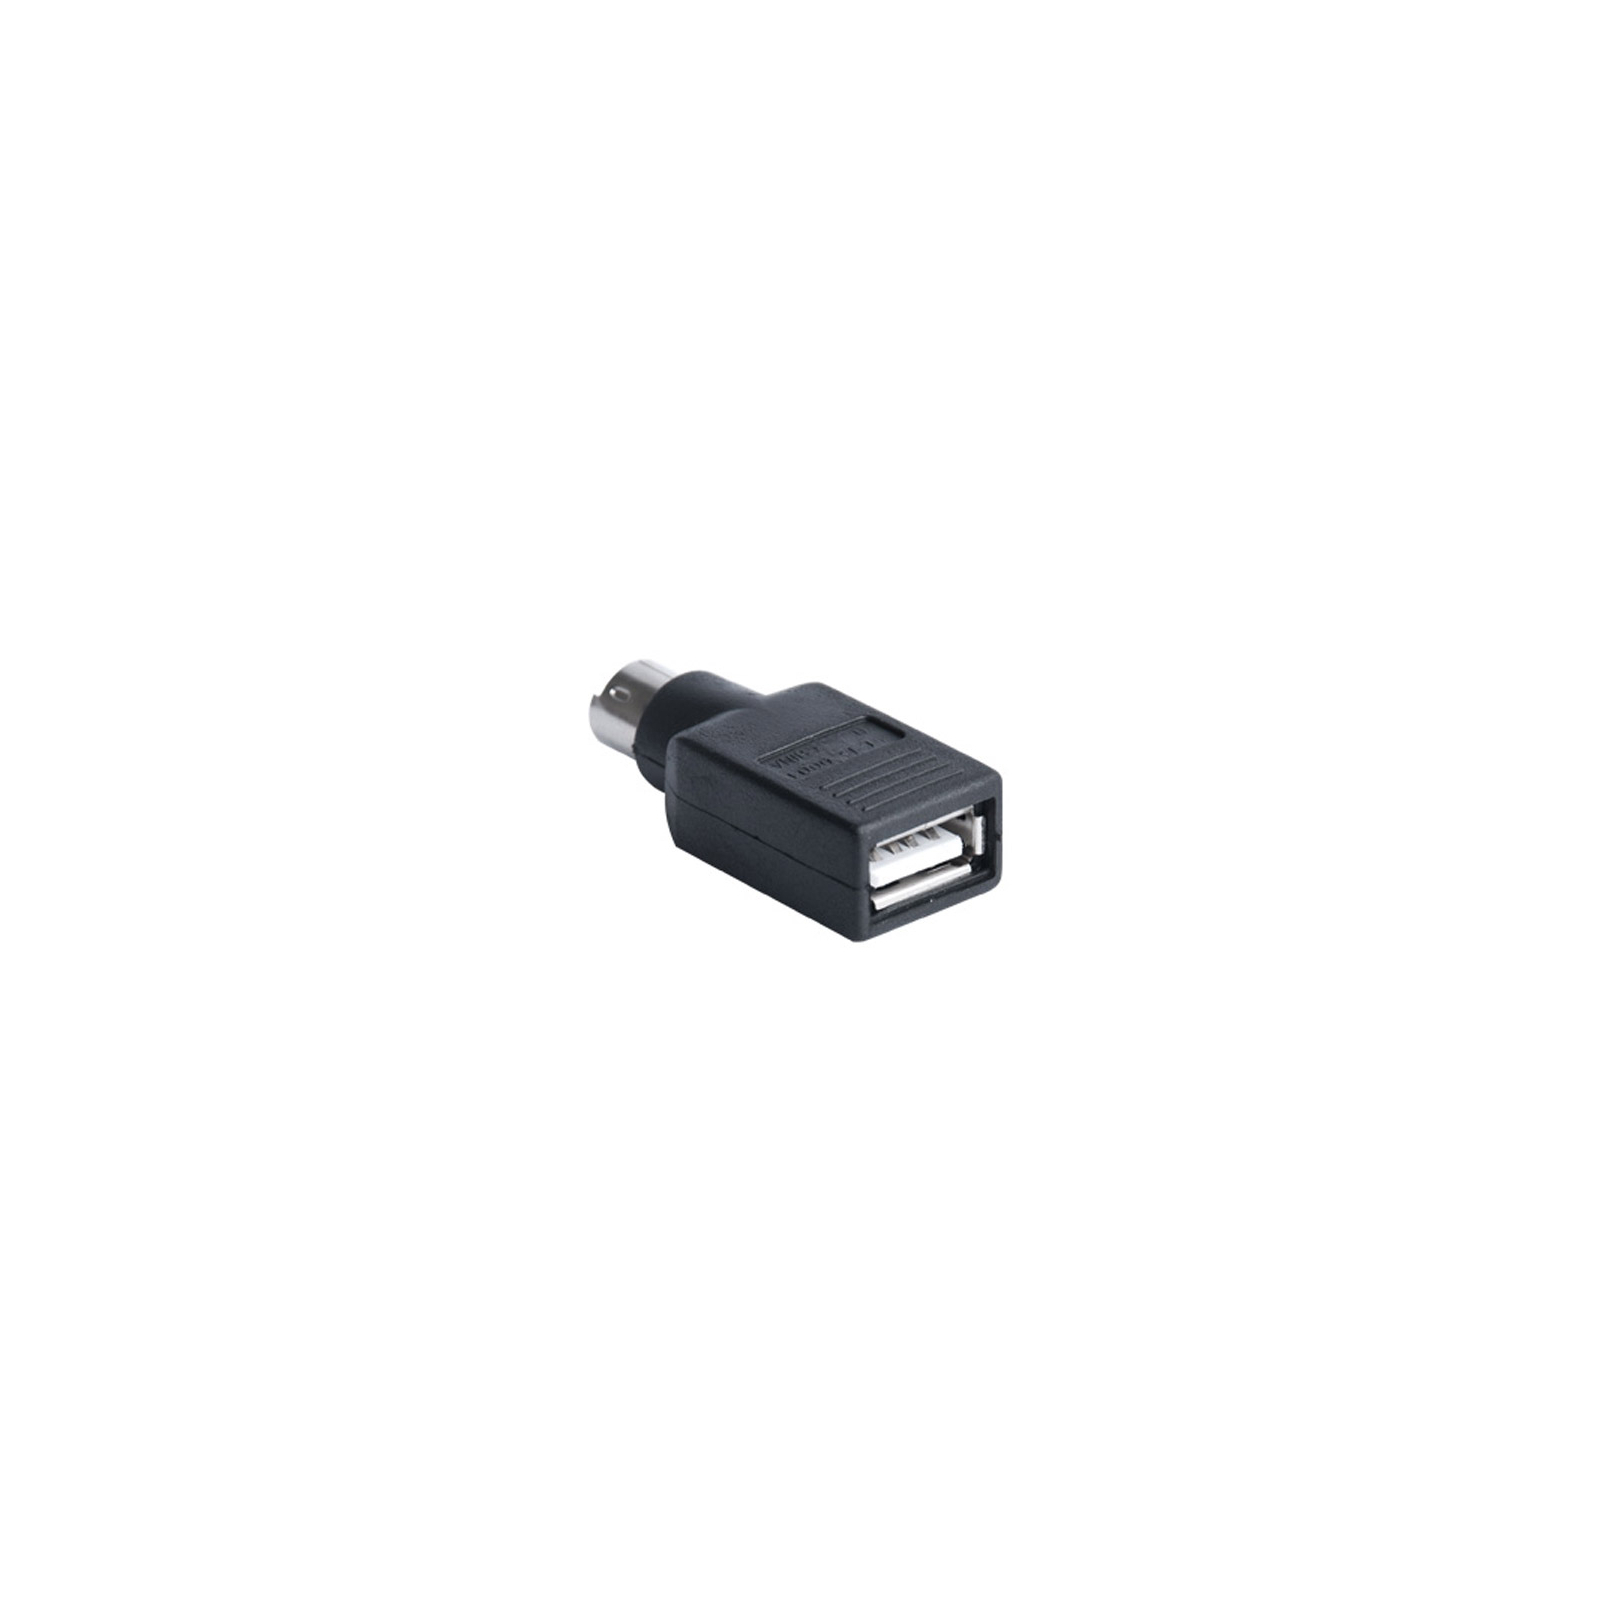 Мышка REAL-EL RM-250 USB+PS/2, black изображение 4